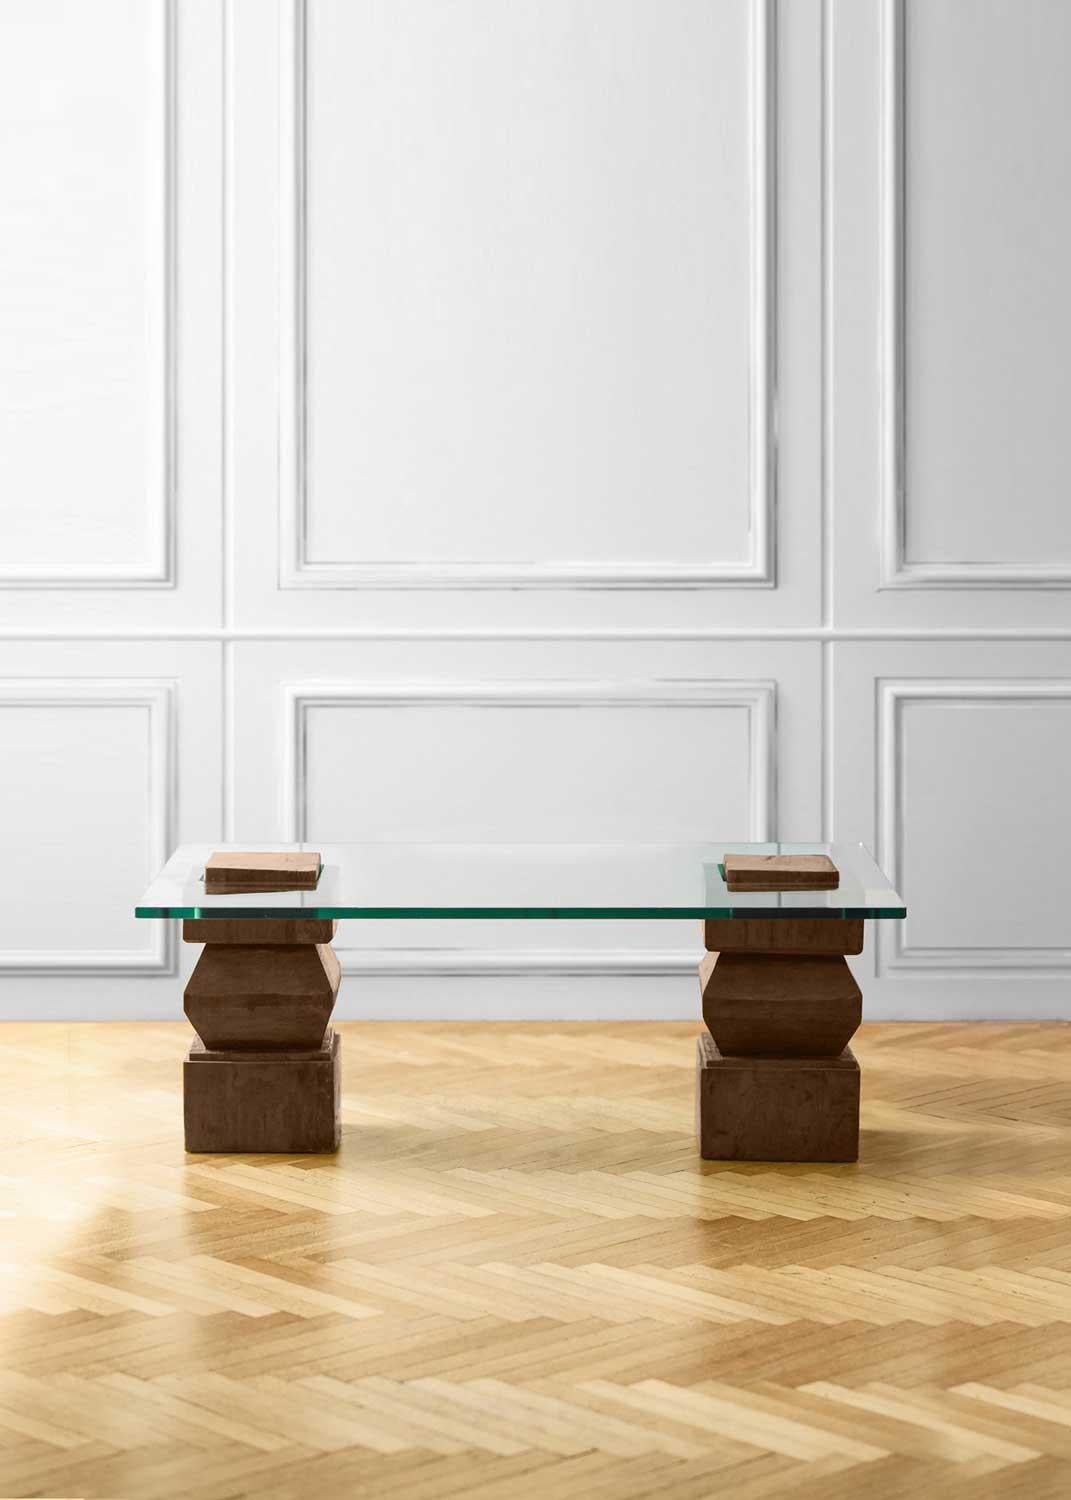 Table basse avec bases en bois et plateau en verre
Détails du produit
Dimensions : 120L x 50H x 70D cm